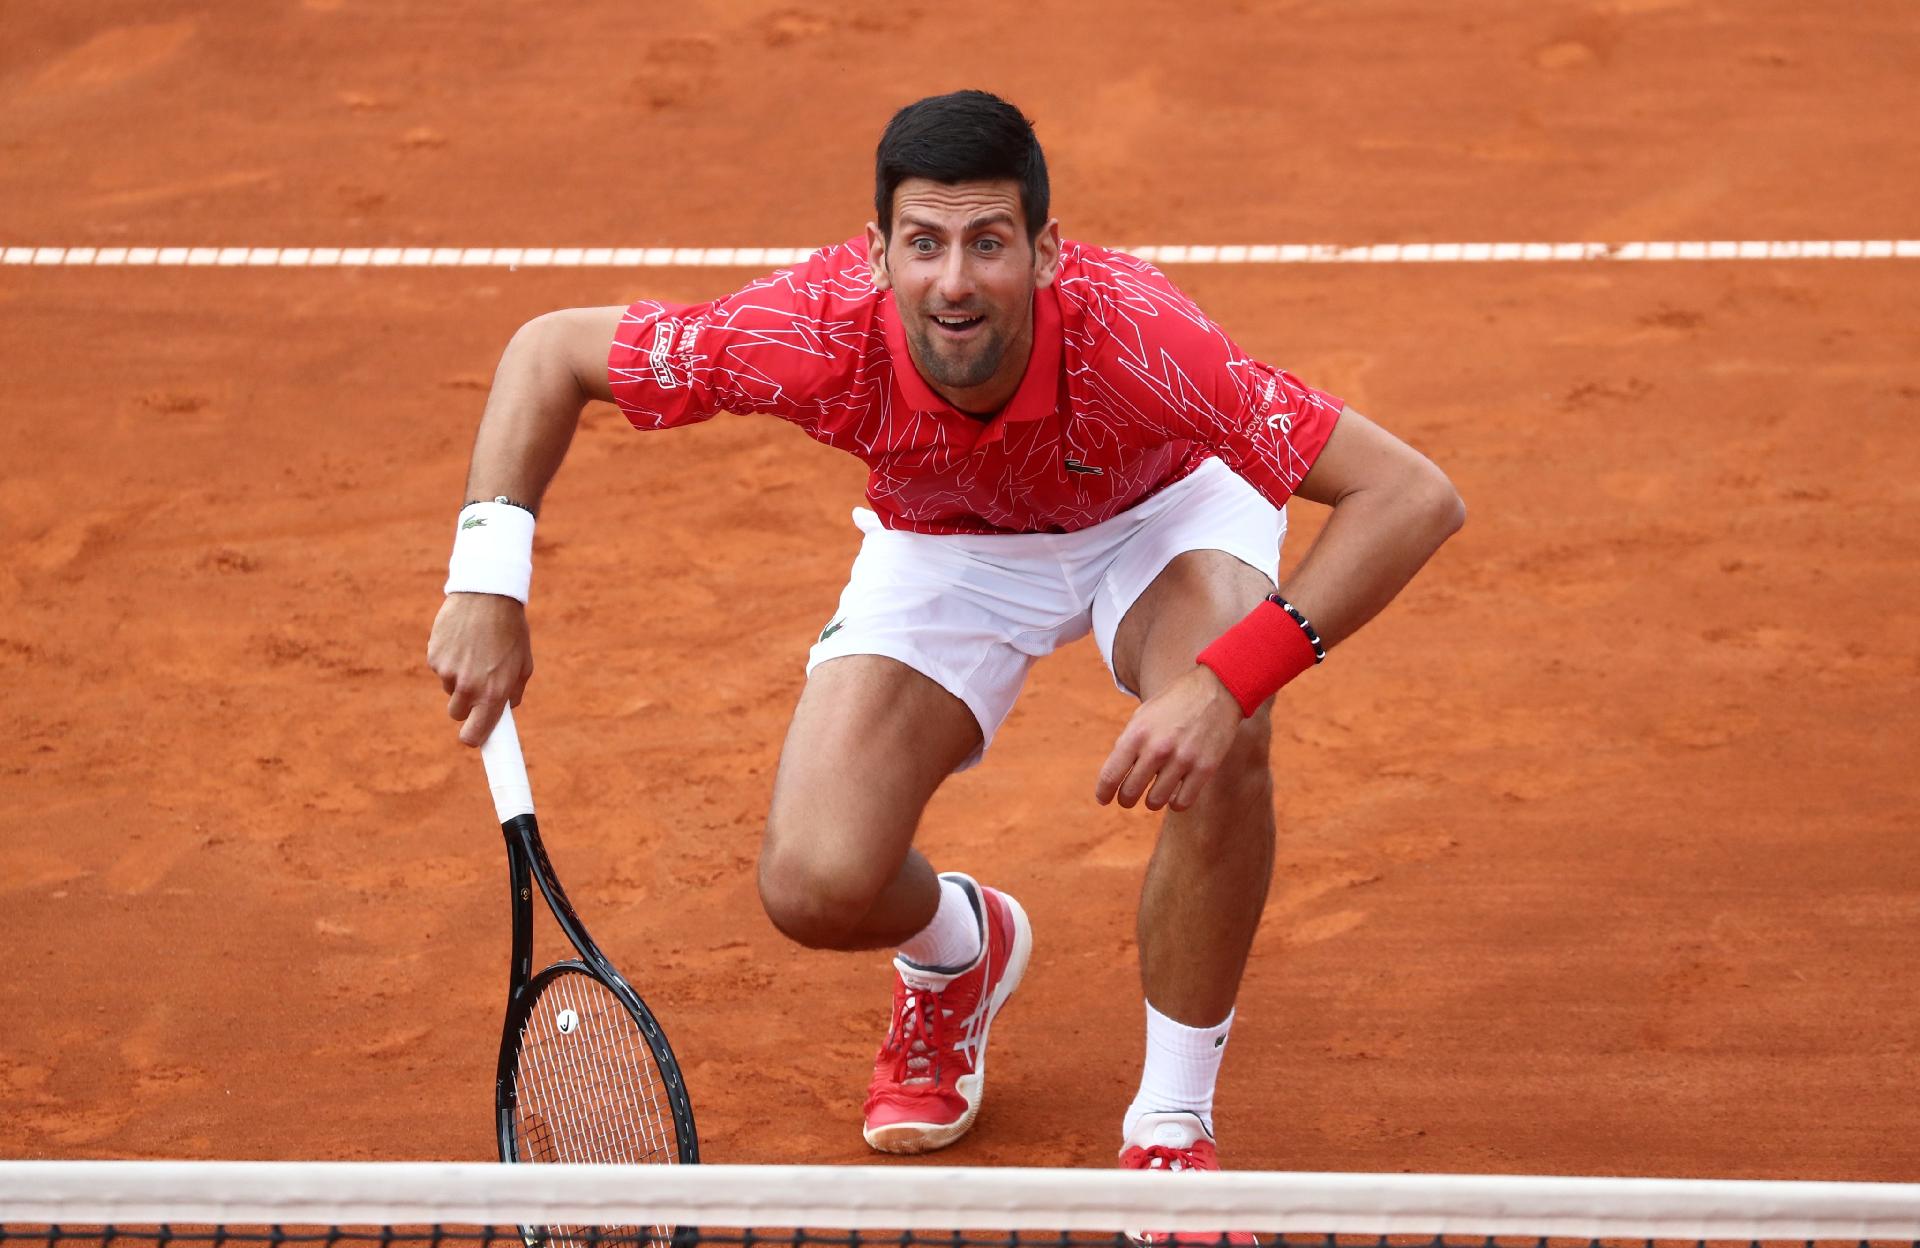 Djokovic é atingido nas pernas por smash à queima-roupa quando